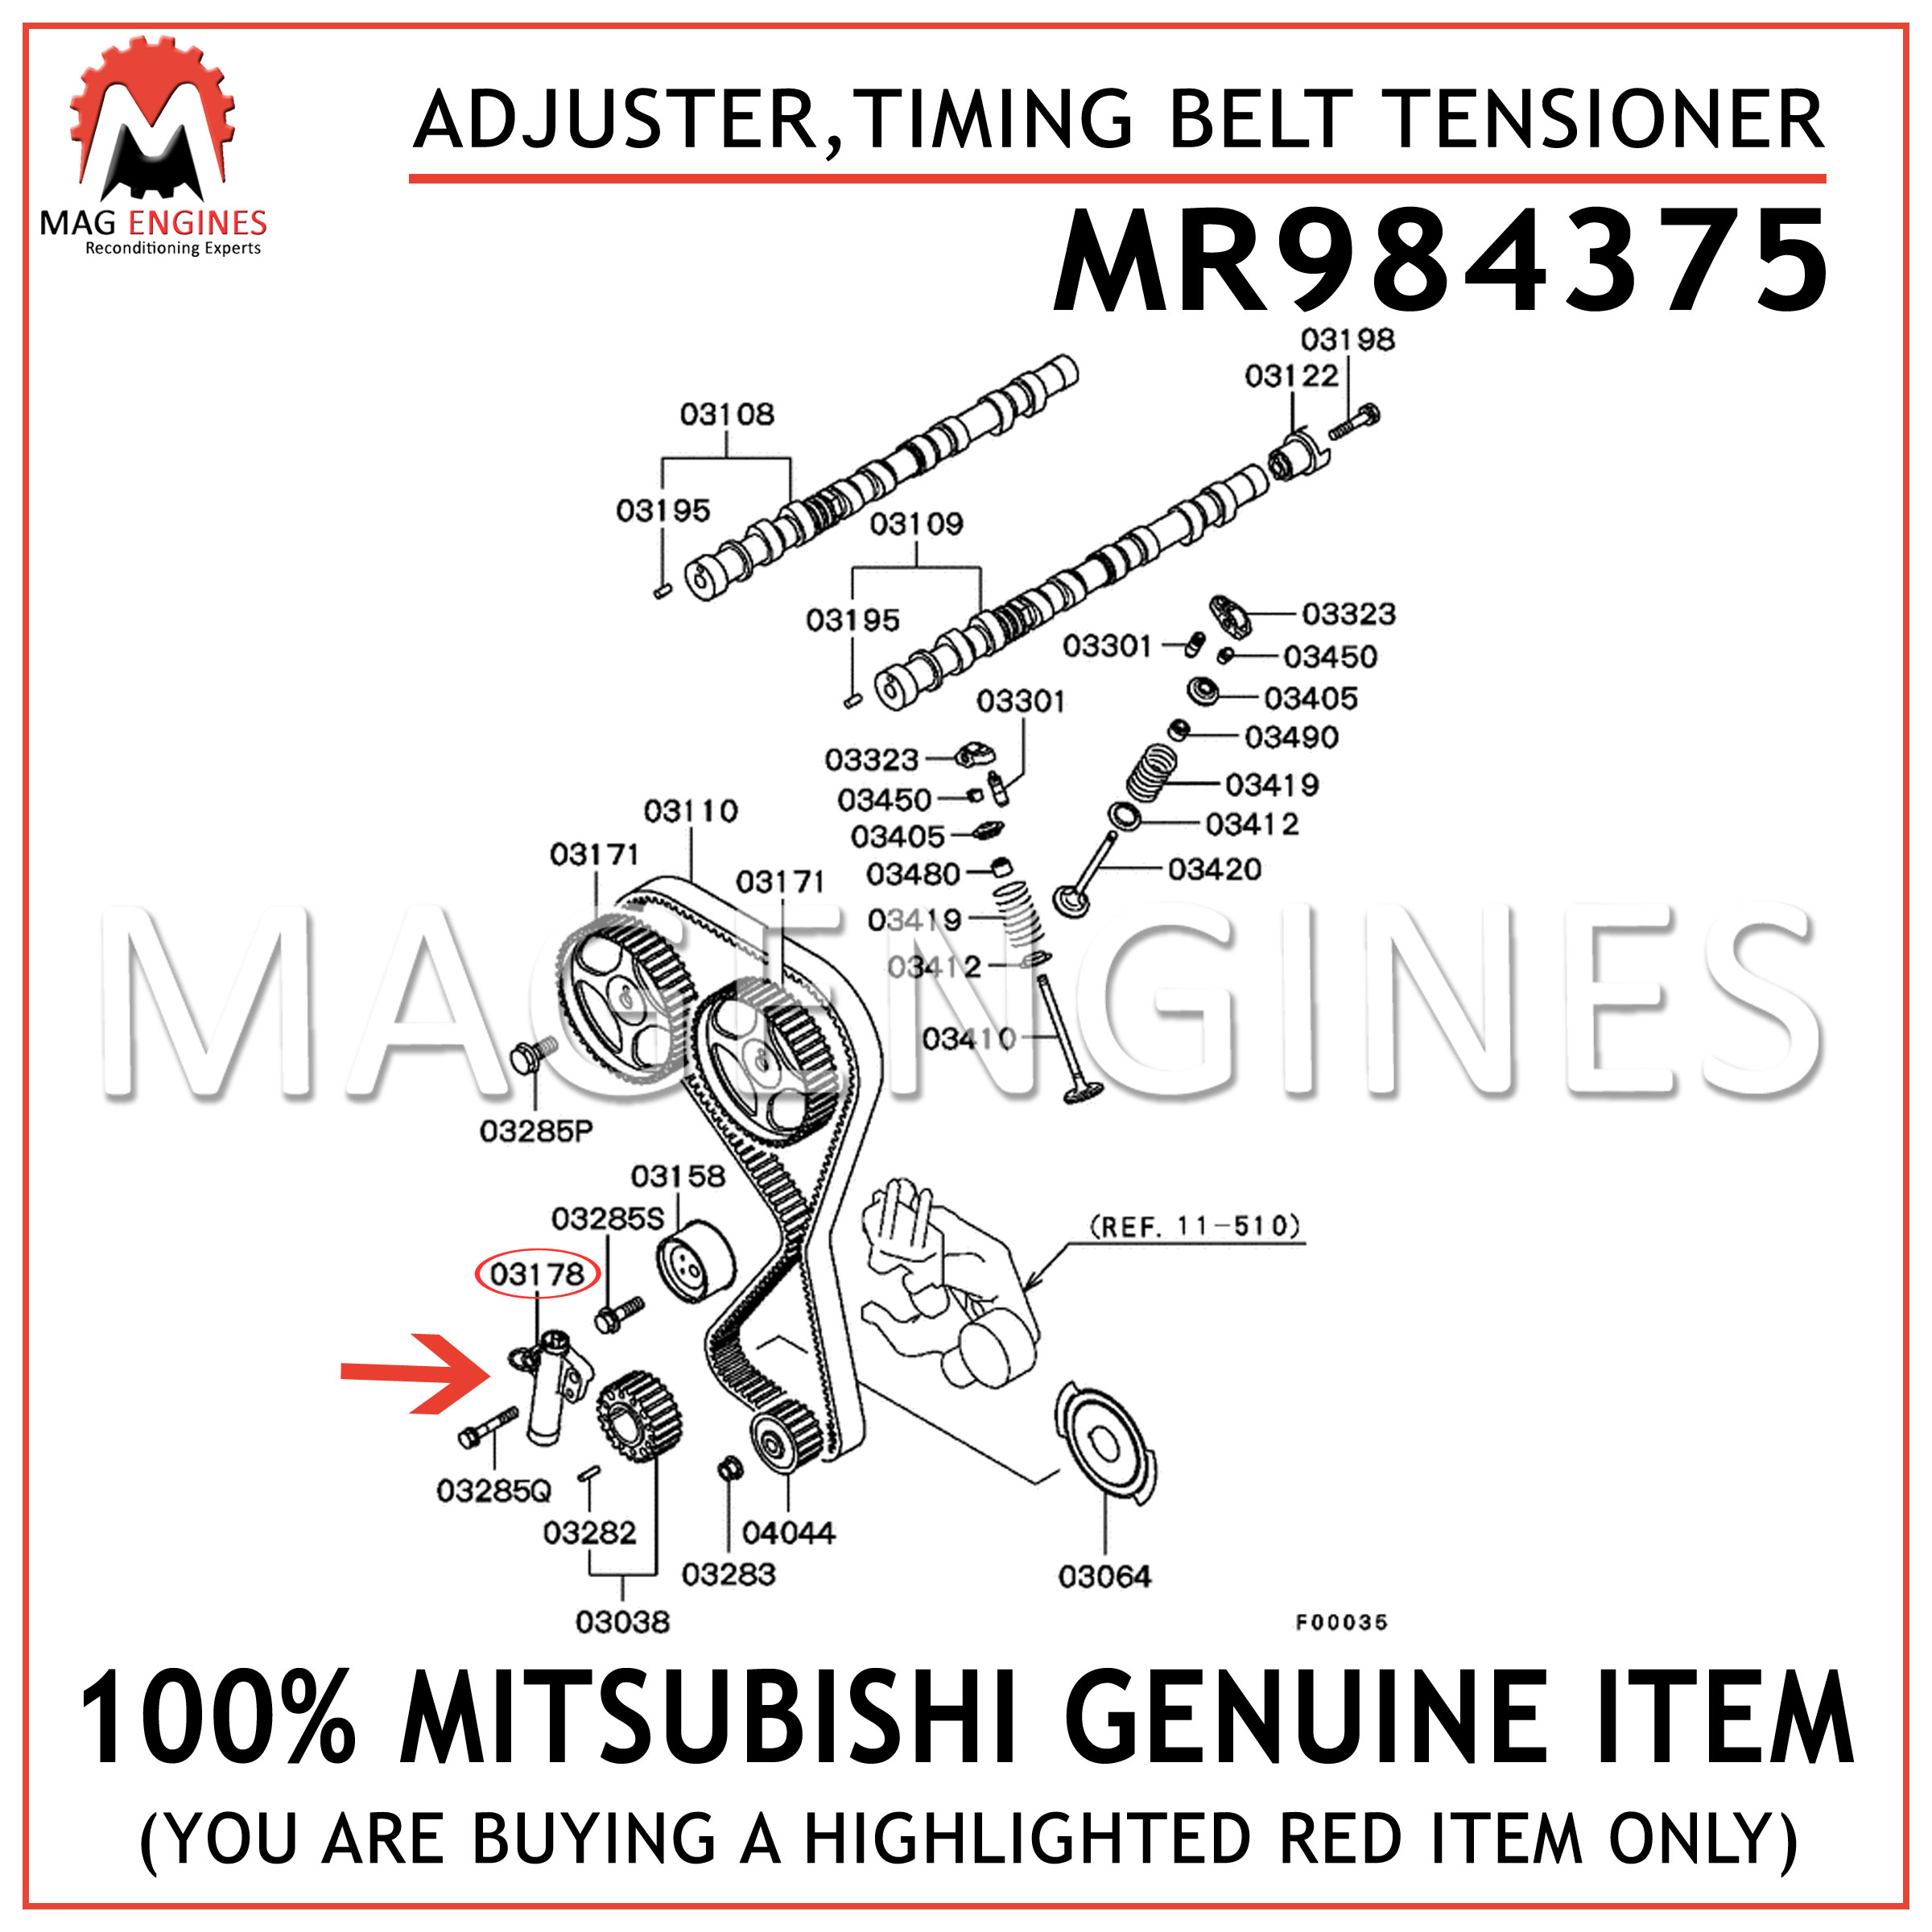 MR984375 Hydraulic Timing Belt Tensioner Adjuster Fits Mitsubishi 03-07 2.0L2.4L 